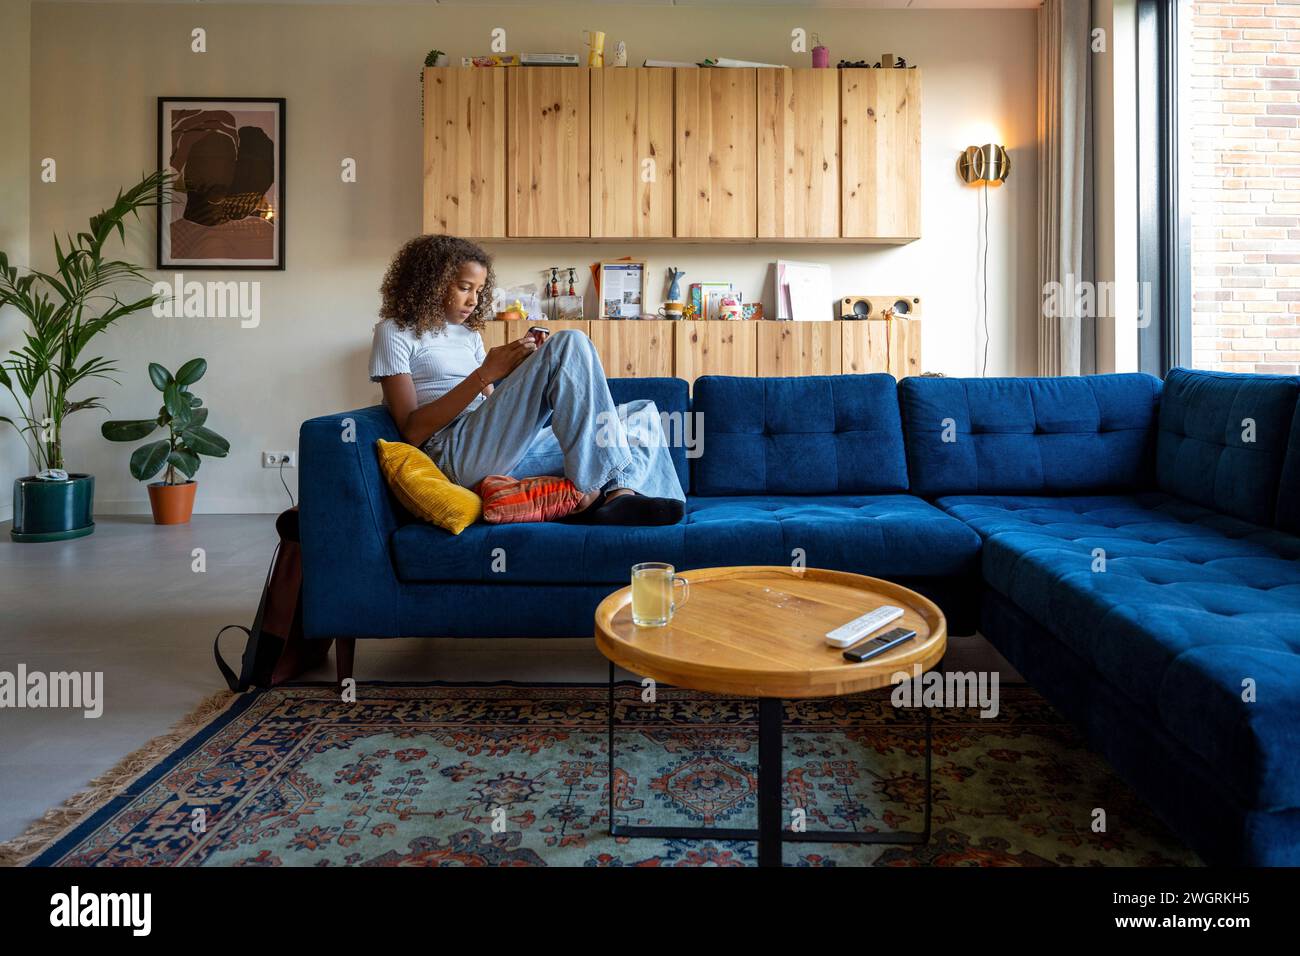 Fille adolescente de race mixte assise sur le canapé avec son téléphone relaxant Banque D'Images